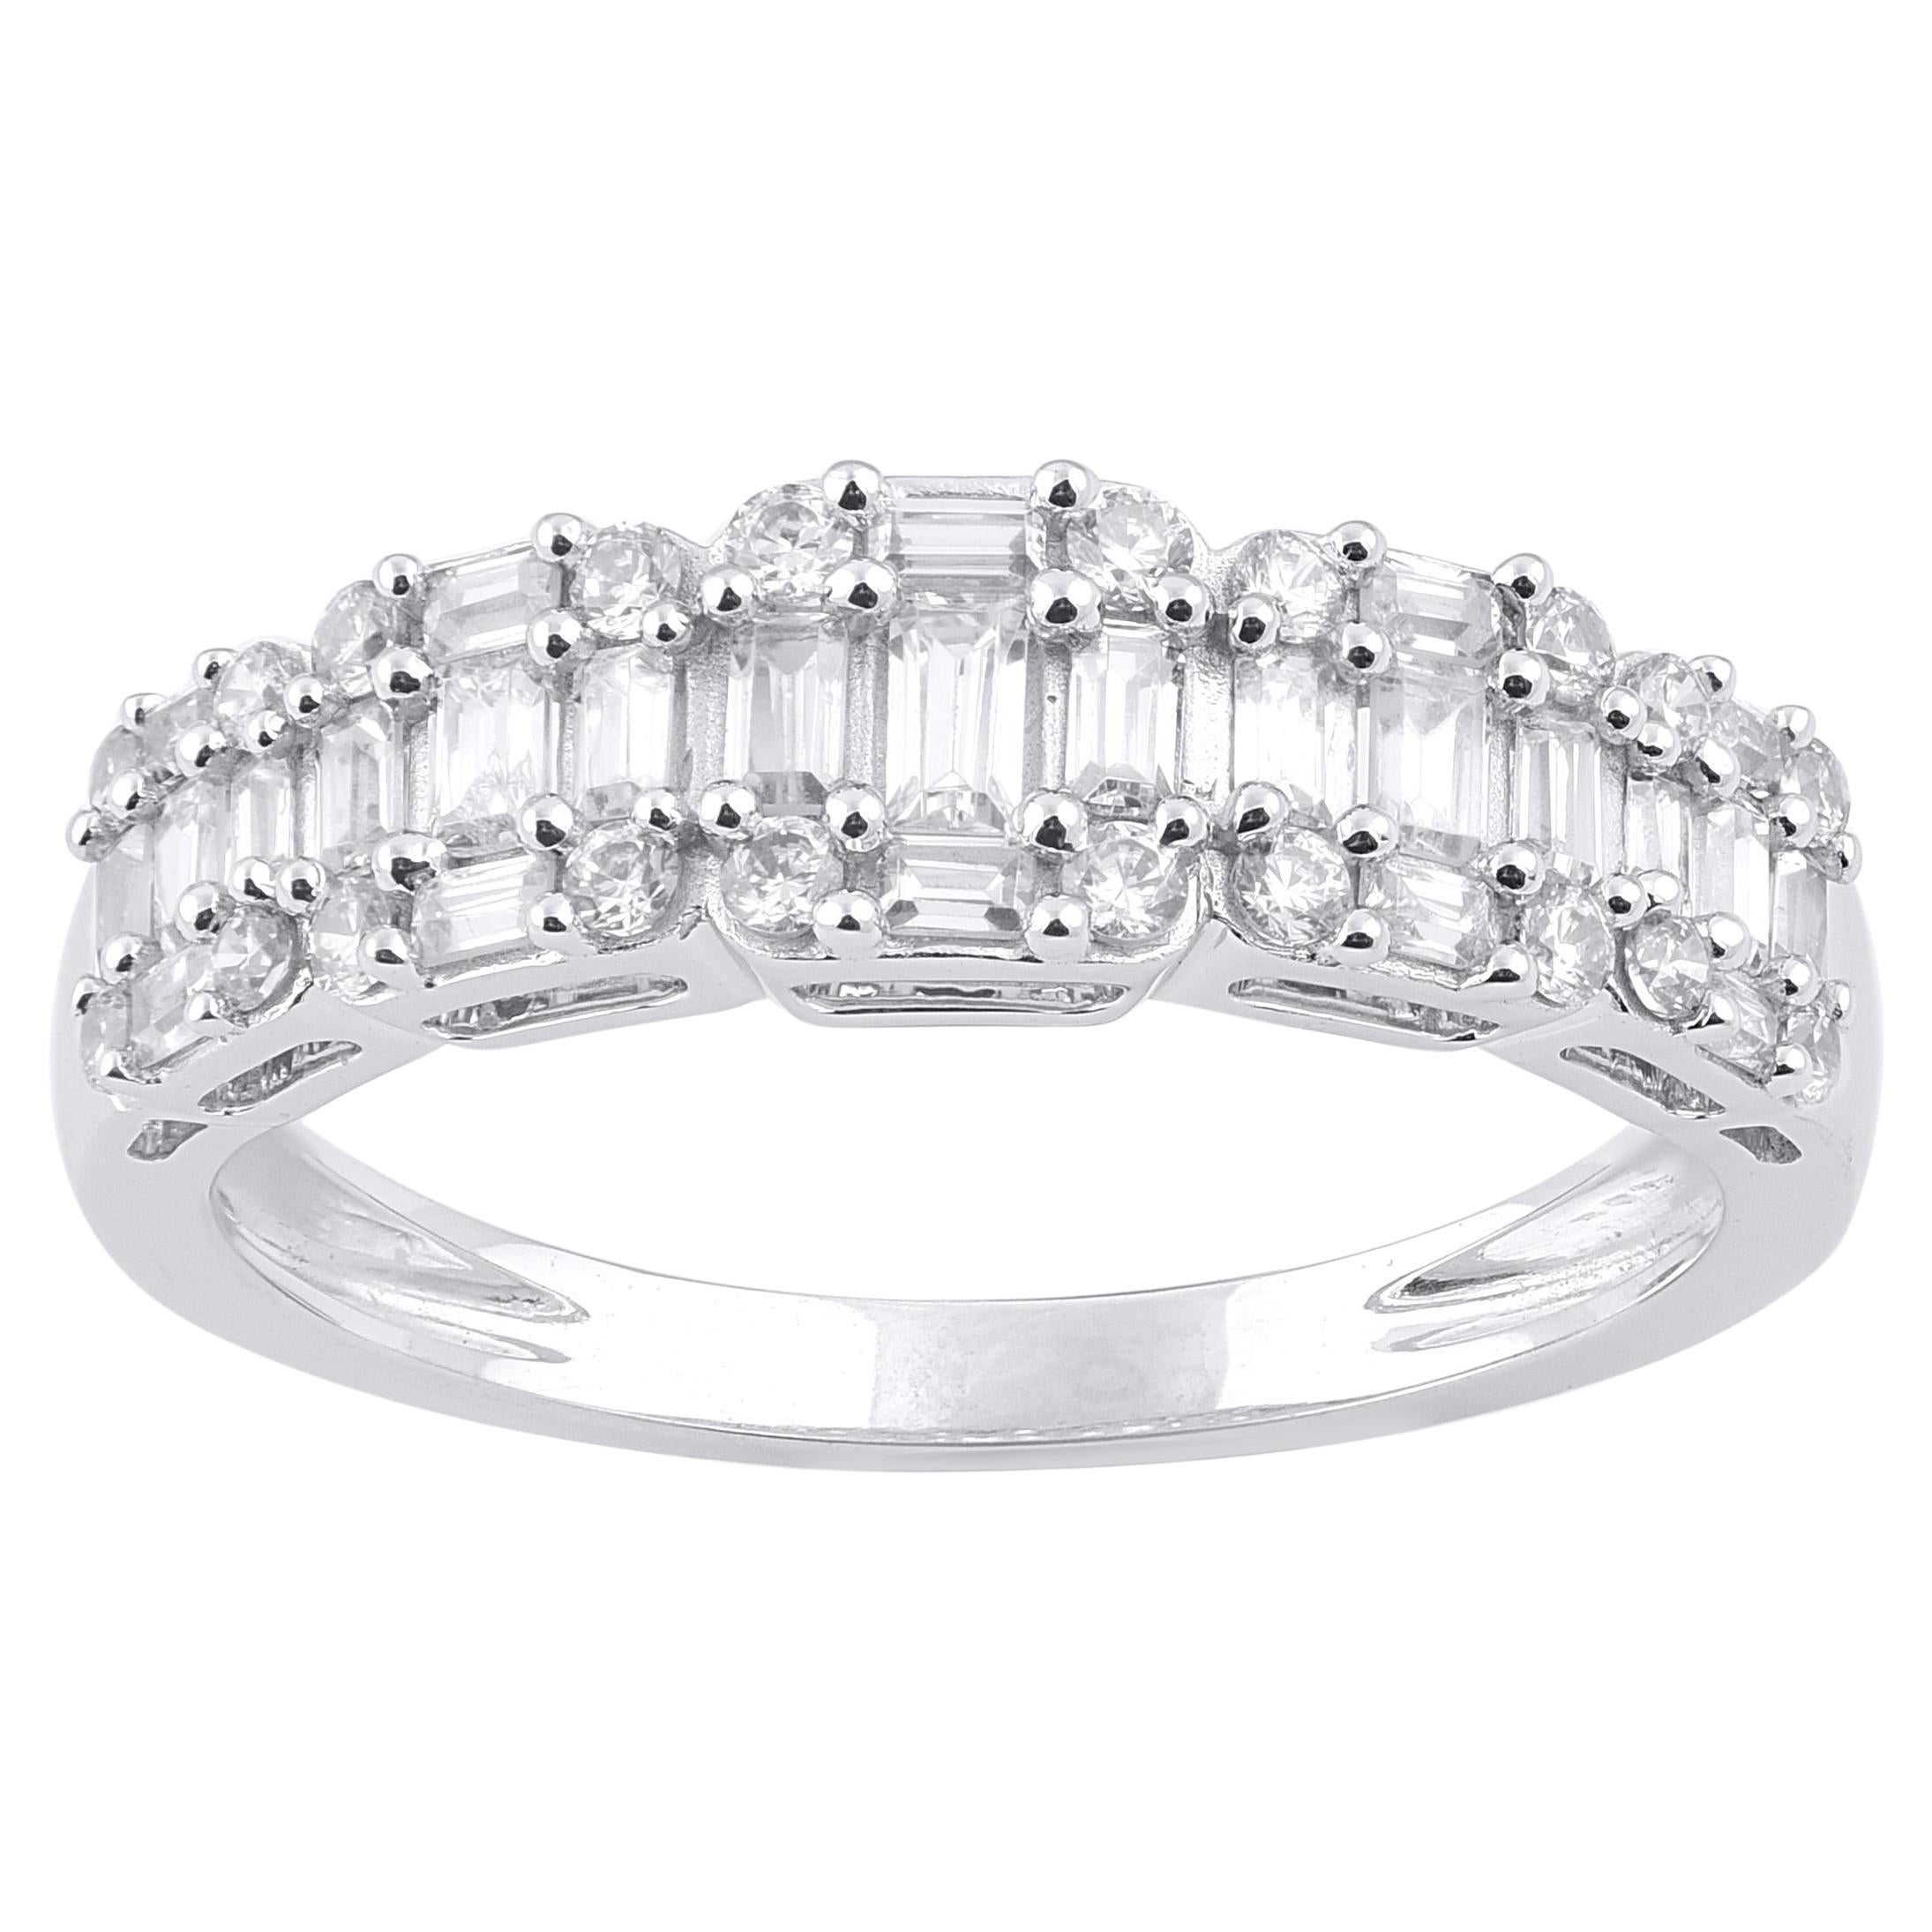 TJD 1.0 Carat Round & Baguette Cut Diamond 14 Karat White Gold Wedding Band Ring